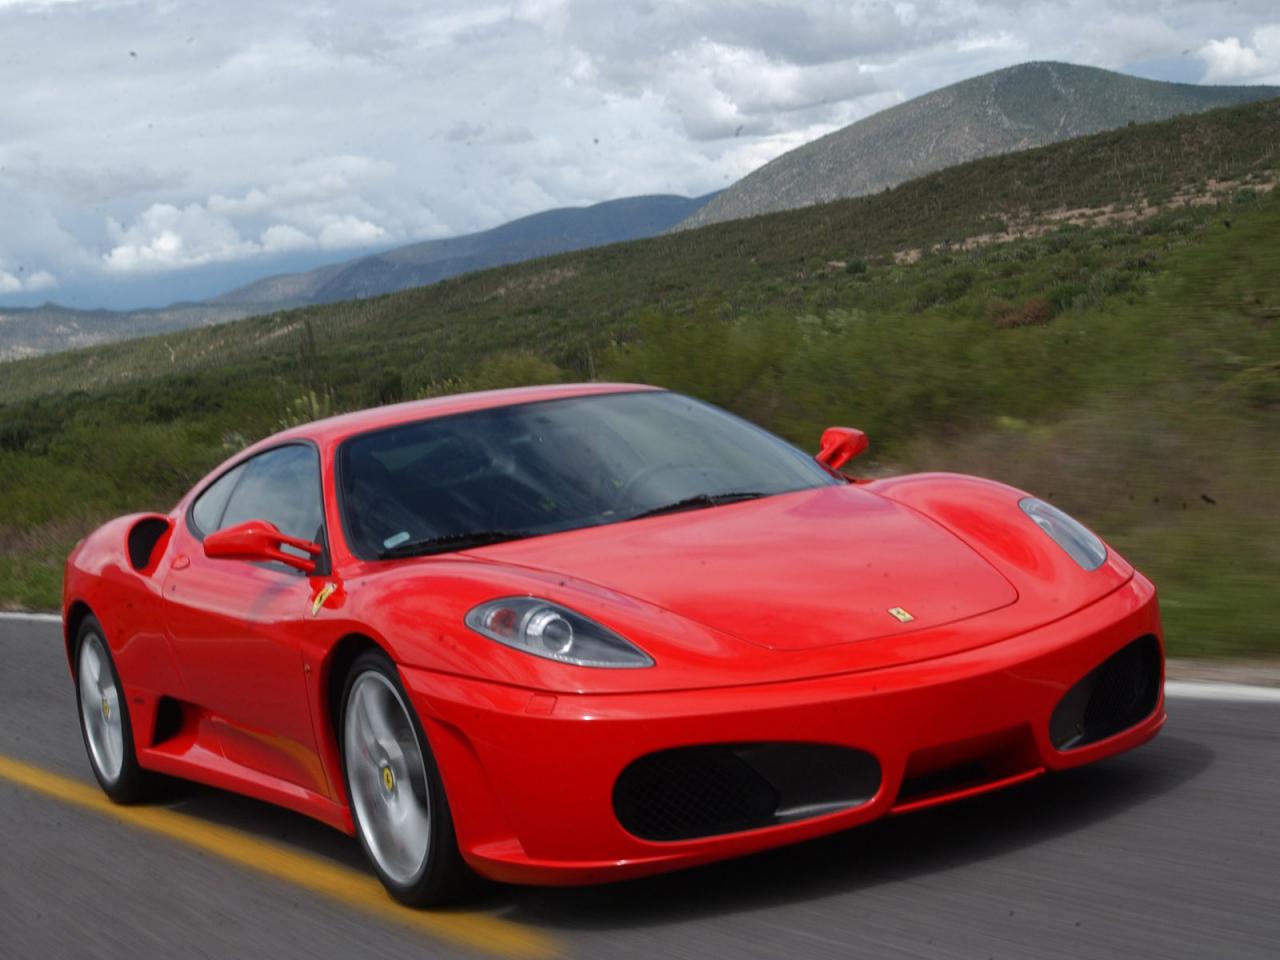 обои Ferrari road фото